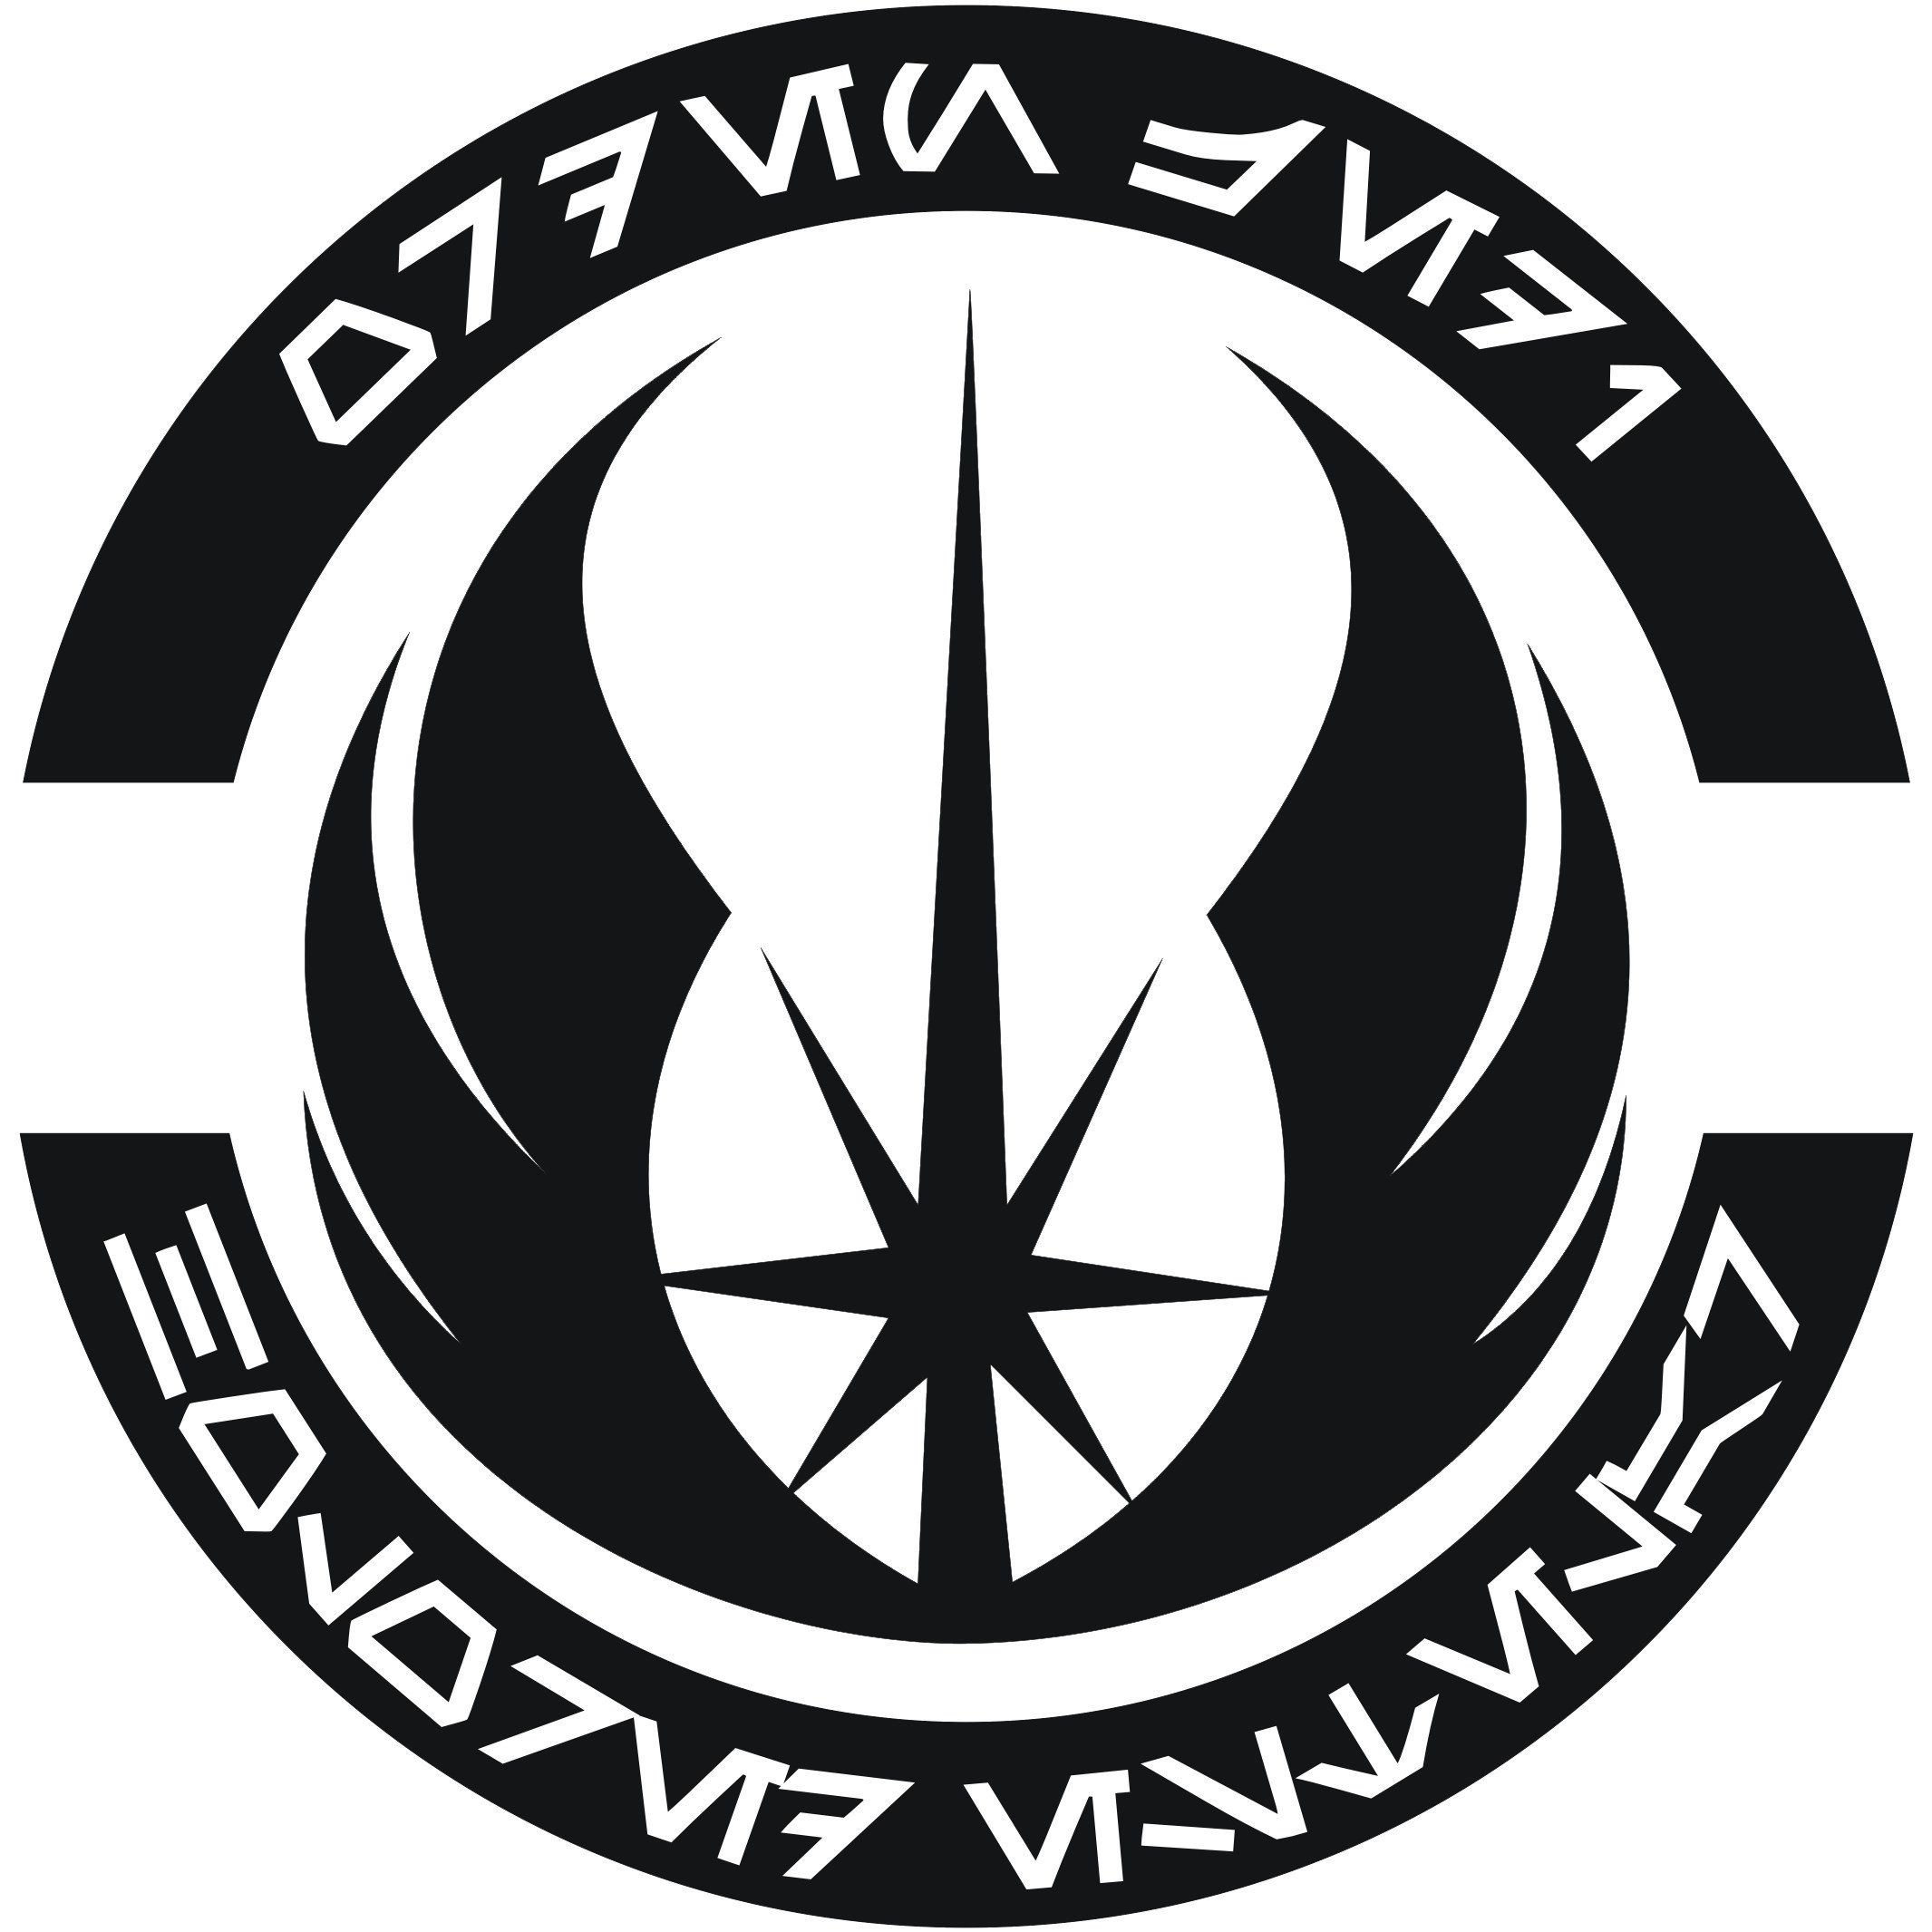 Jedi order logo wallpaper